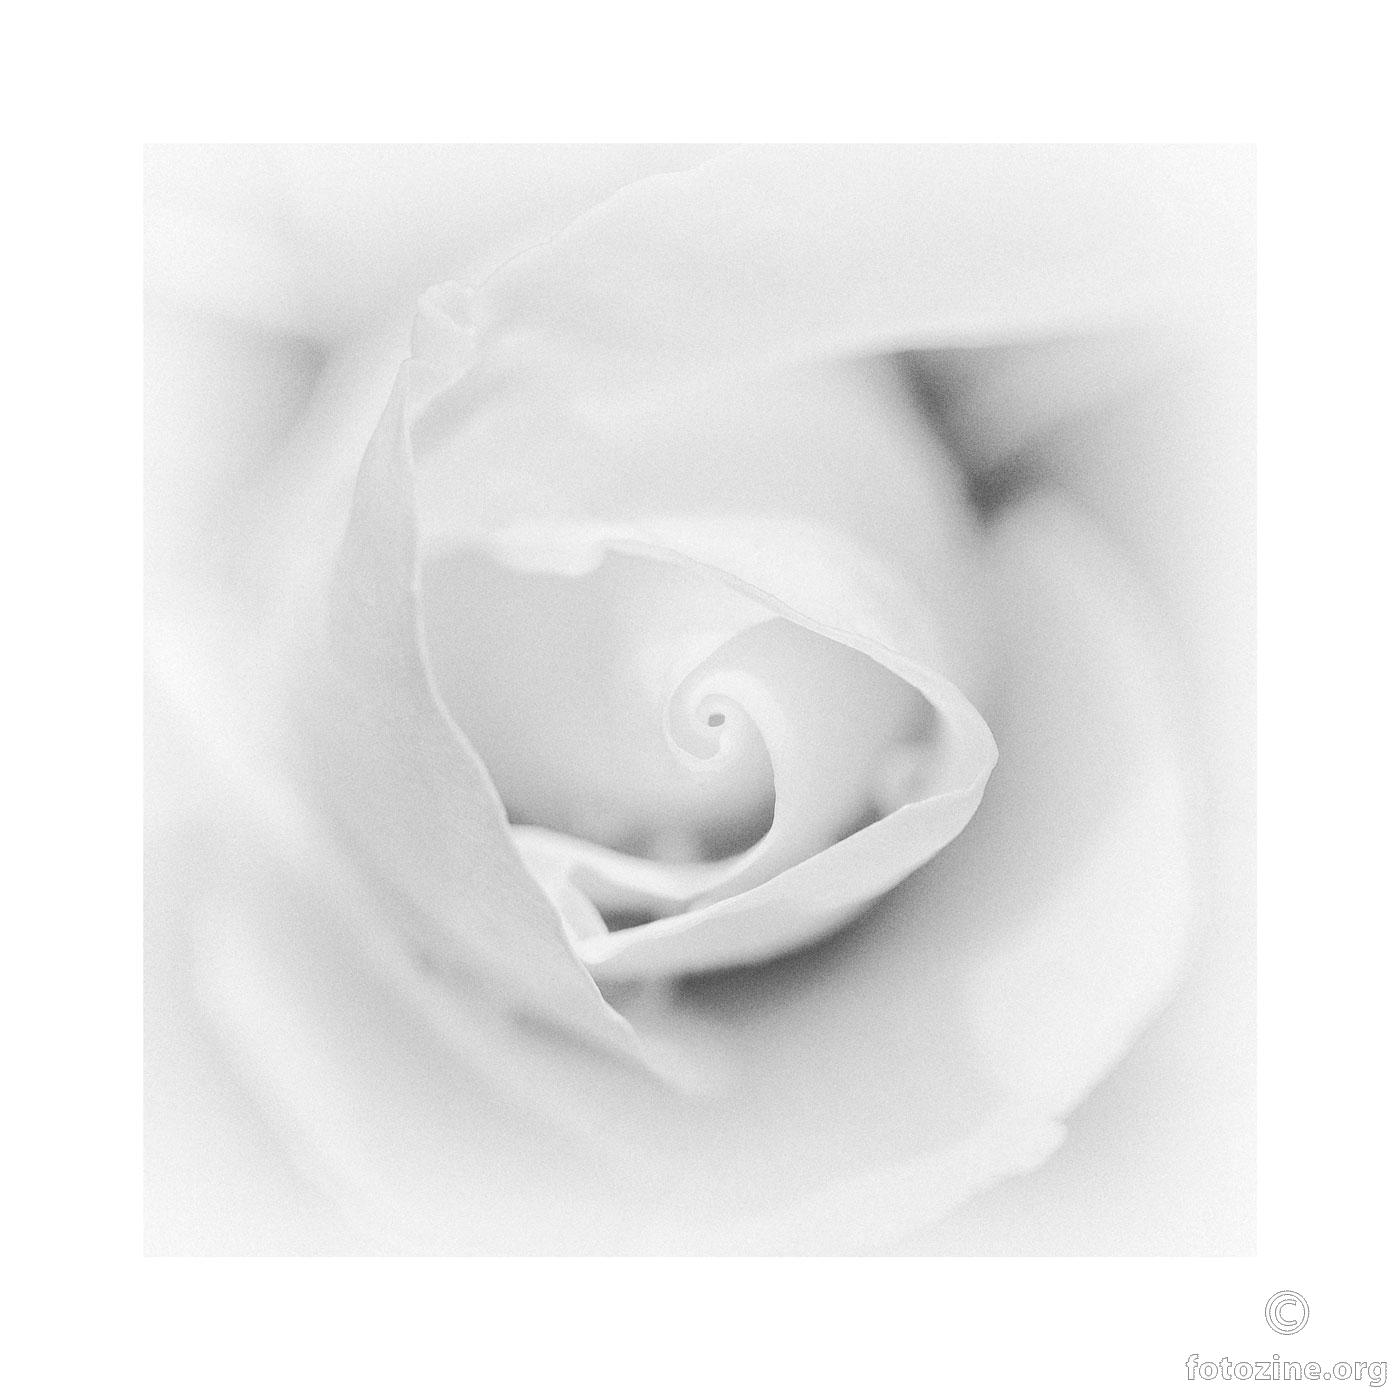 Bijela ruža